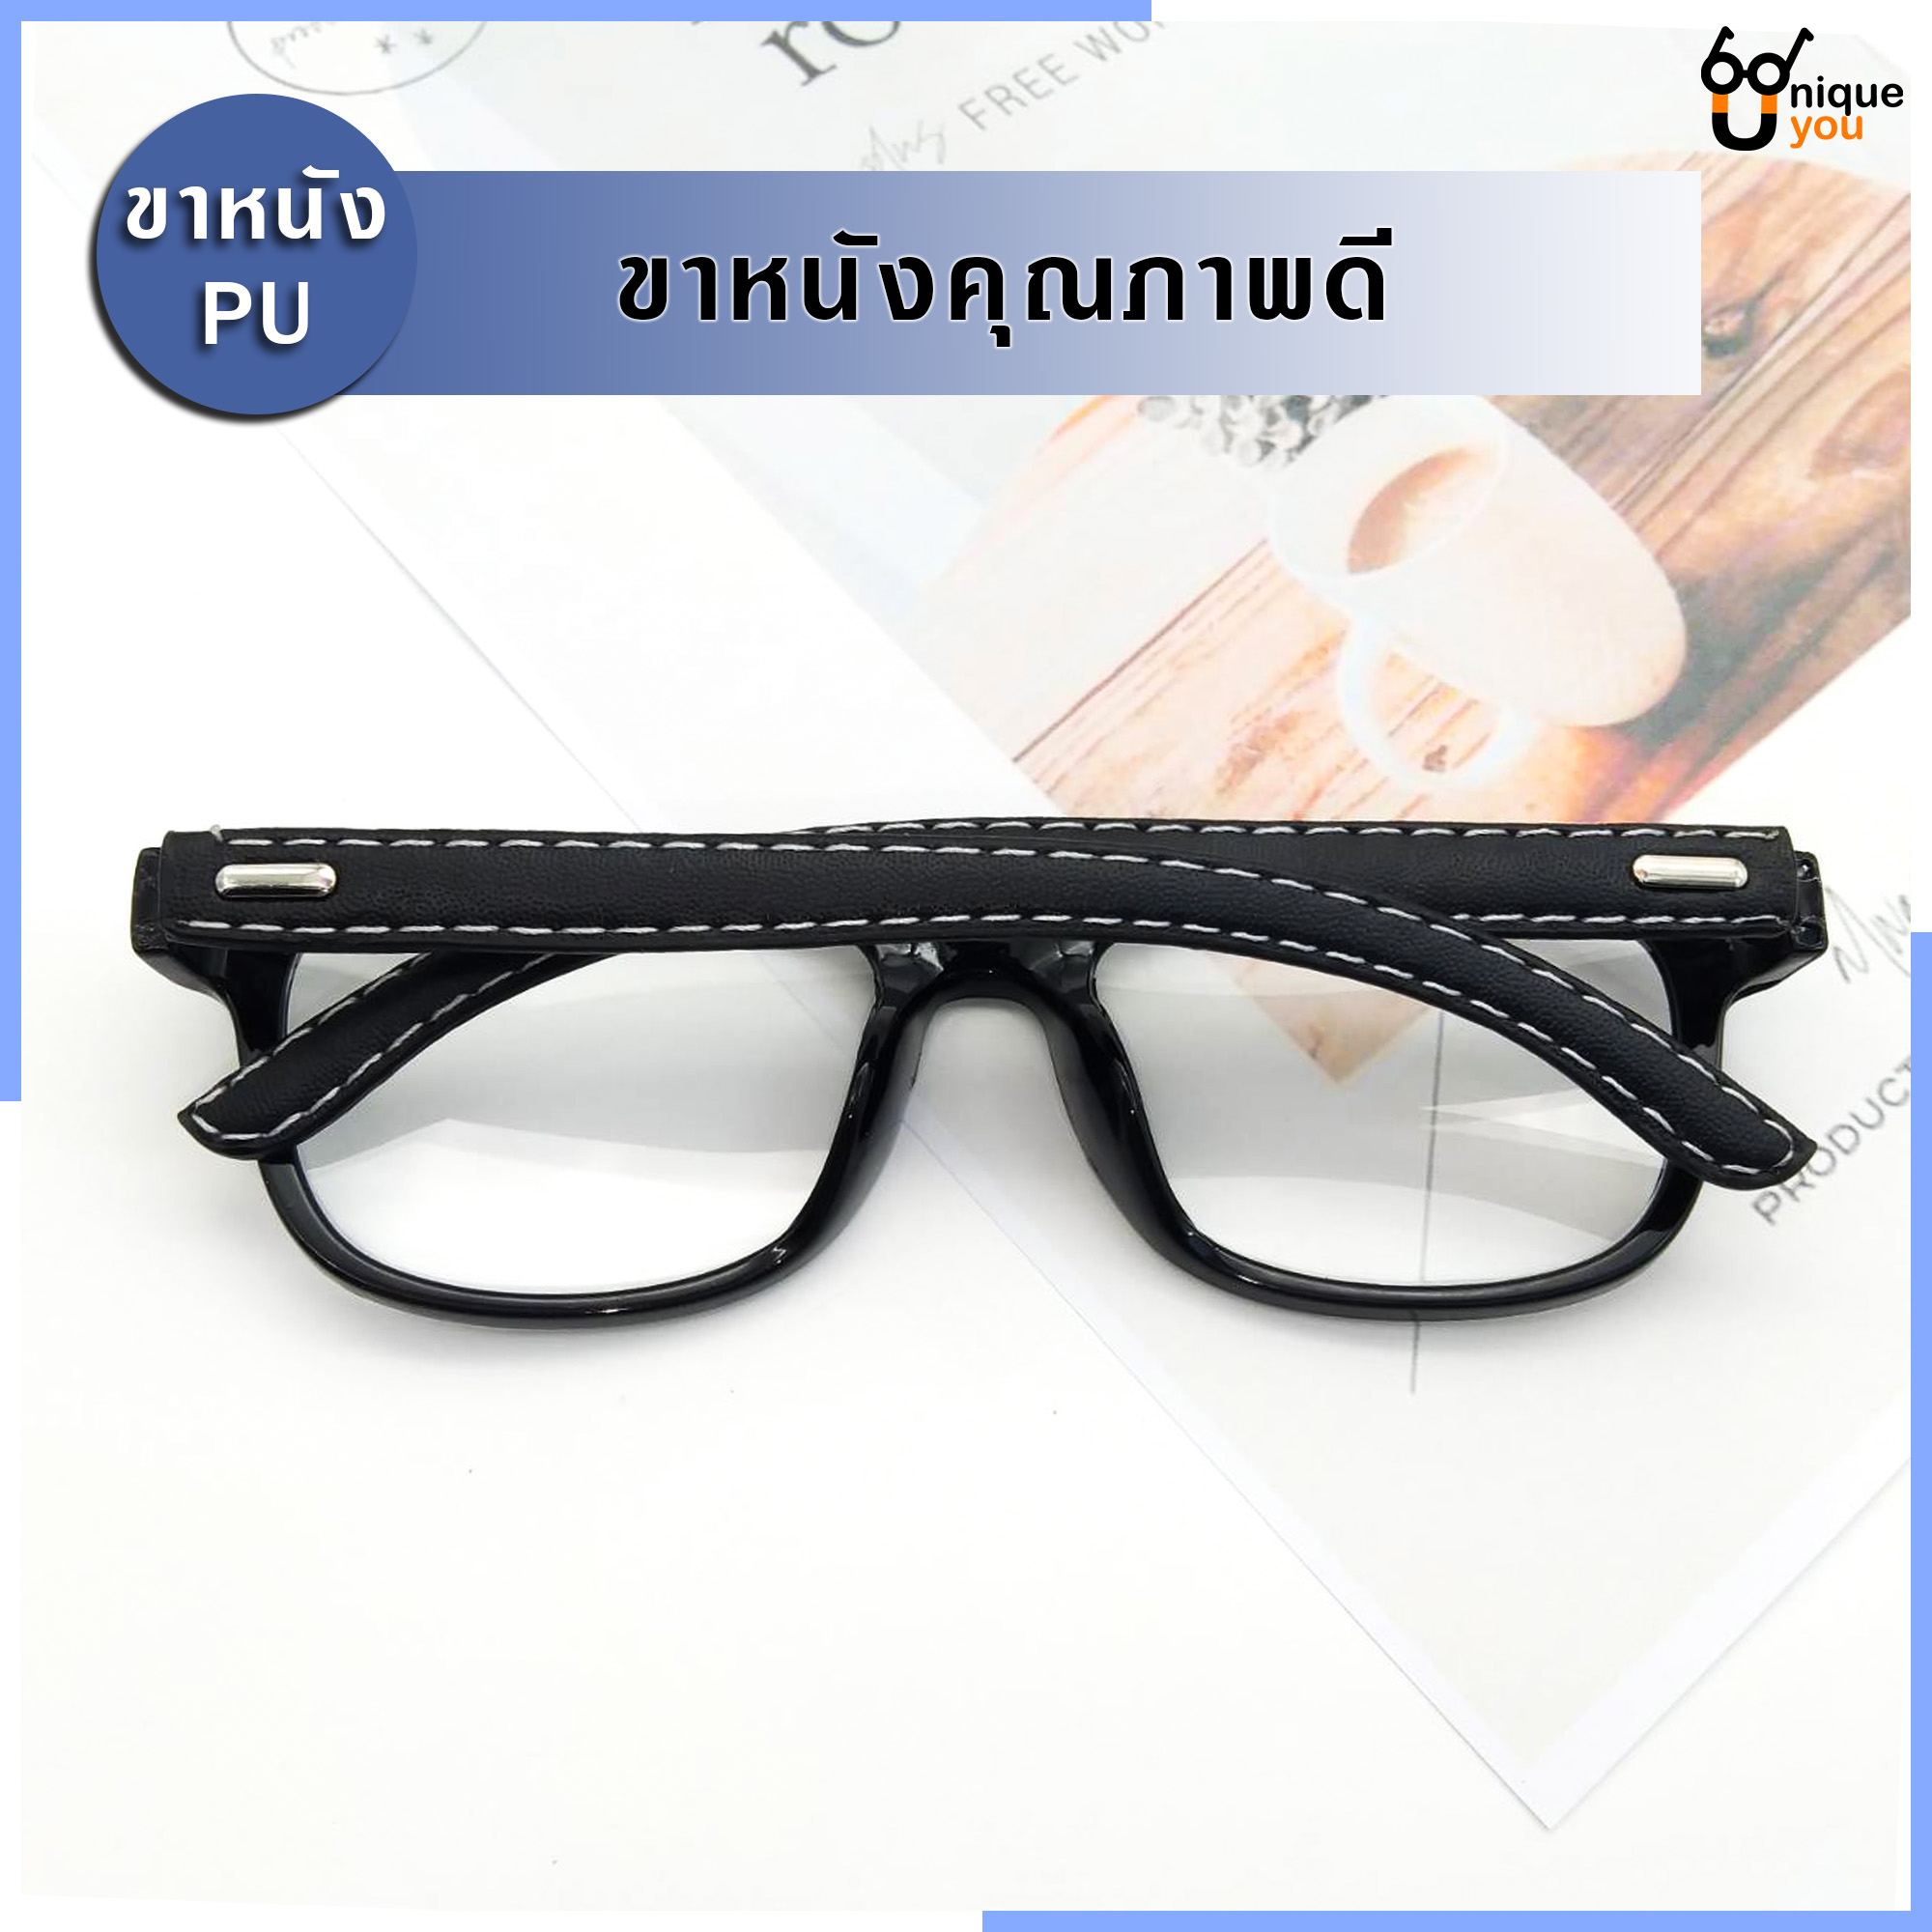 รูปภาพเพิ่มเติมเกี่ยวกับ Uniq แว่นสายตายาว แว่นสายตาสั้น ขาหนังPU กรอบแว่นหนังPU แว่นสายตา+กรอบแว่นตา แว่นสายตายาว-สั้น